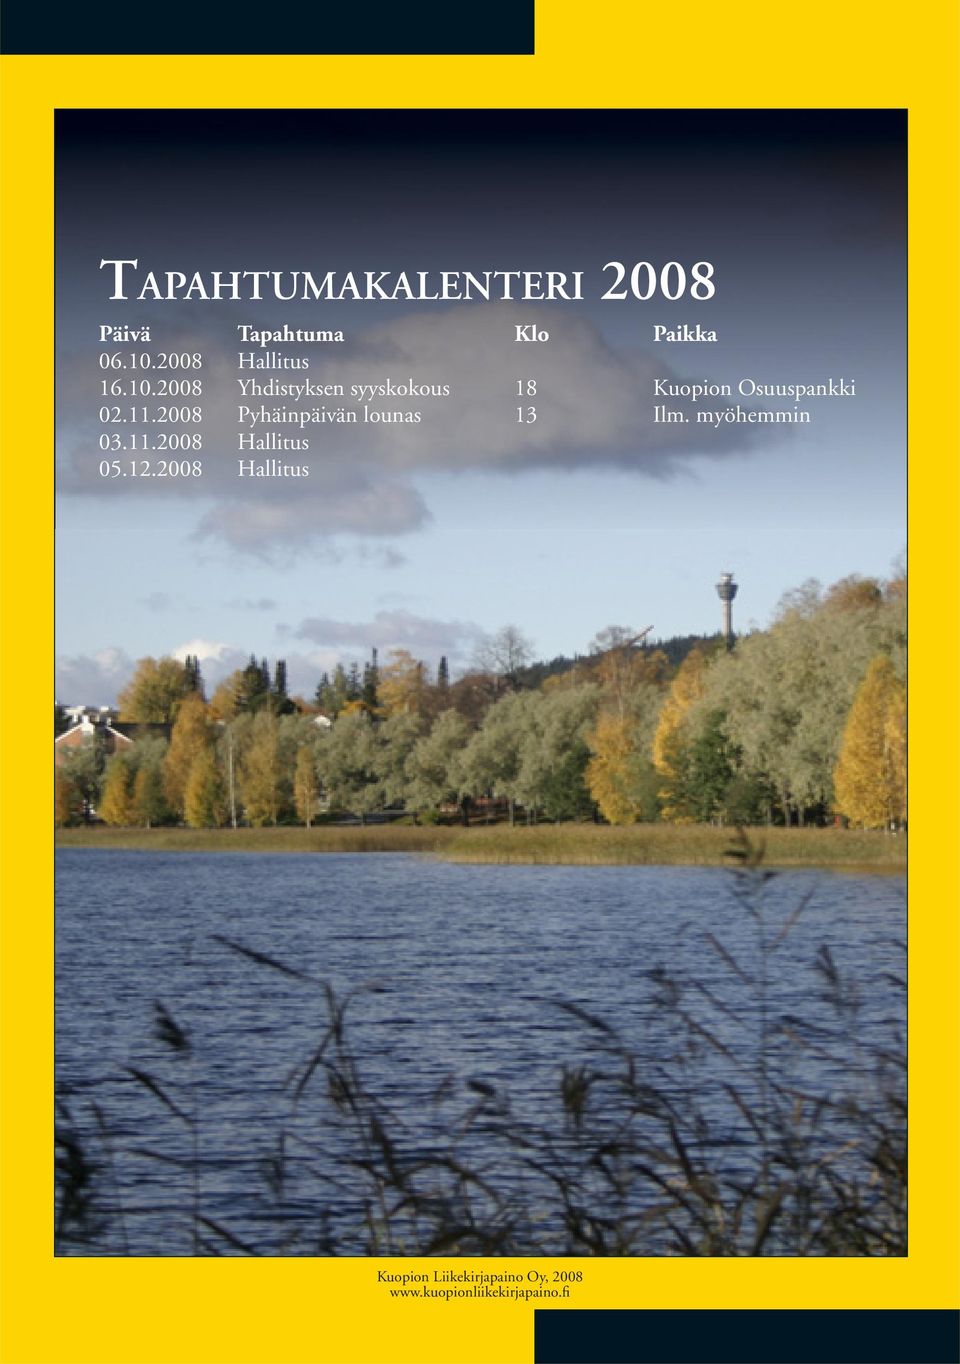 2008 Yhdistyksen syyskokous 18 Kuopion Osuuspankki 02.11.